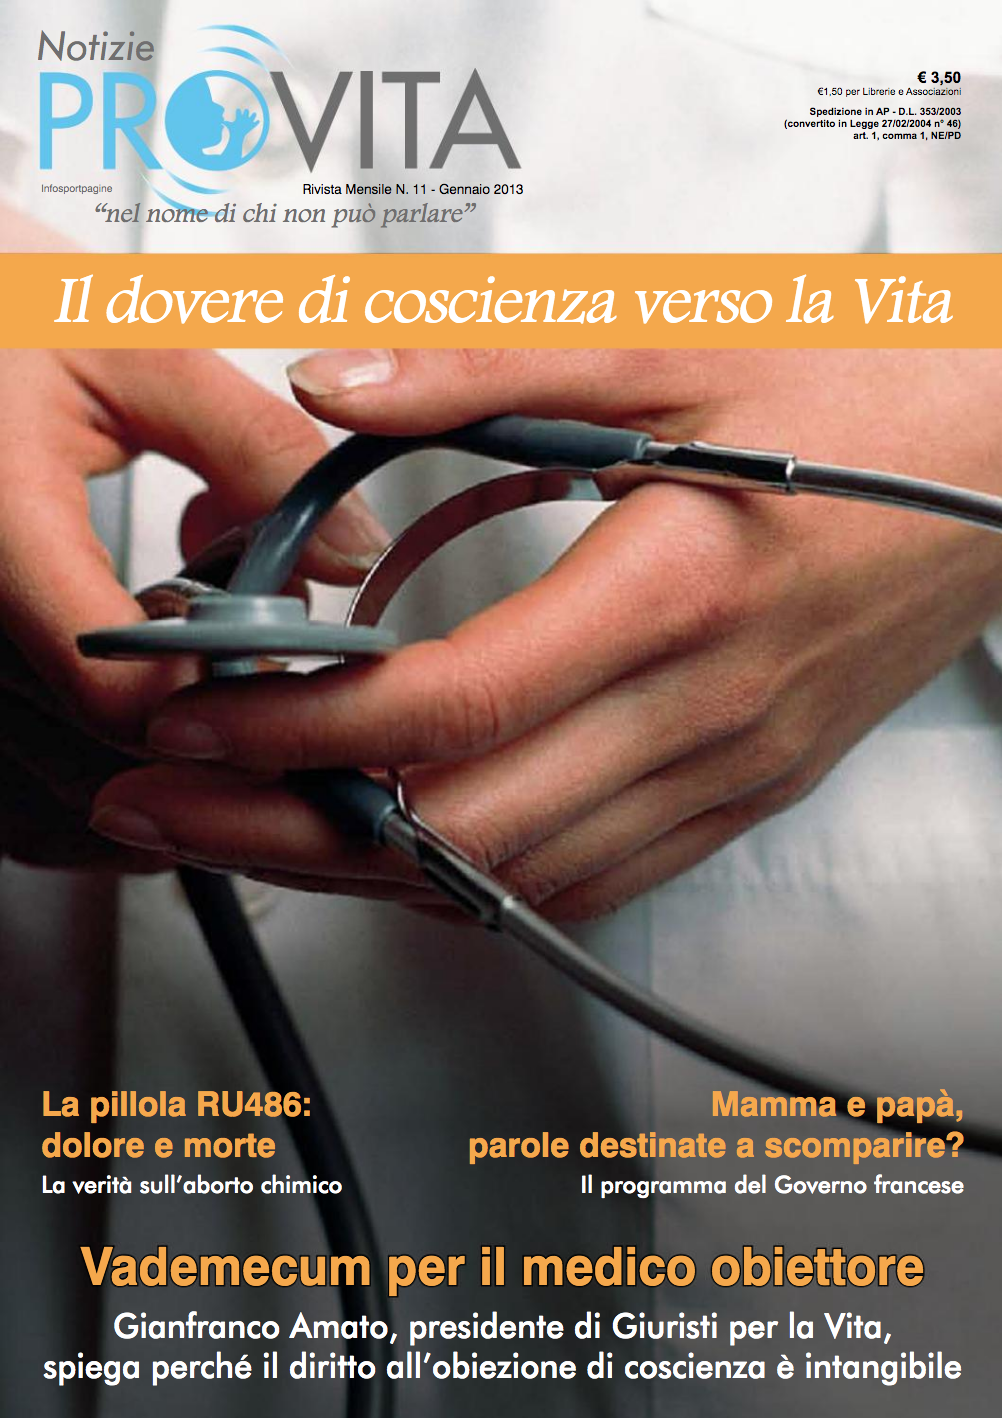 Primo numero del 2013 incentrato sulla Vita e sull’obiezione di coscienza per i medici